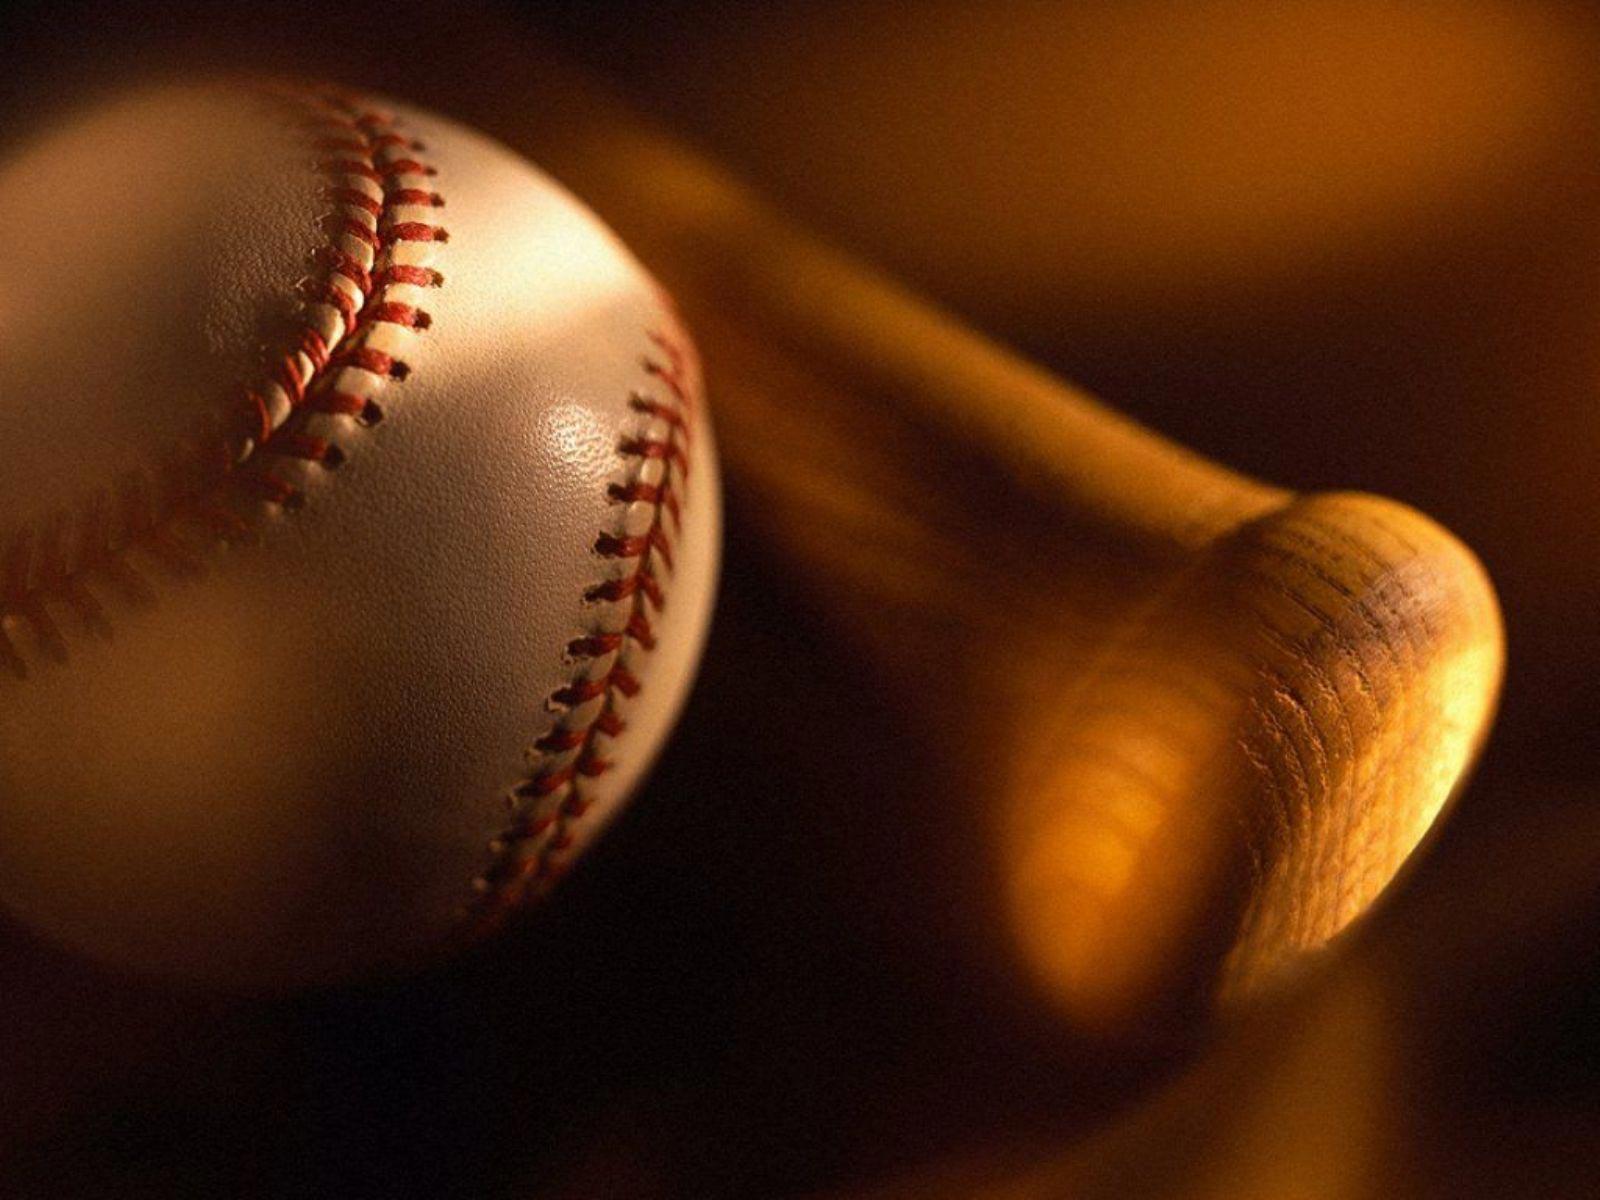 The Best Top Desktop Baseball Wallpaper Ball And Bat Jpeg